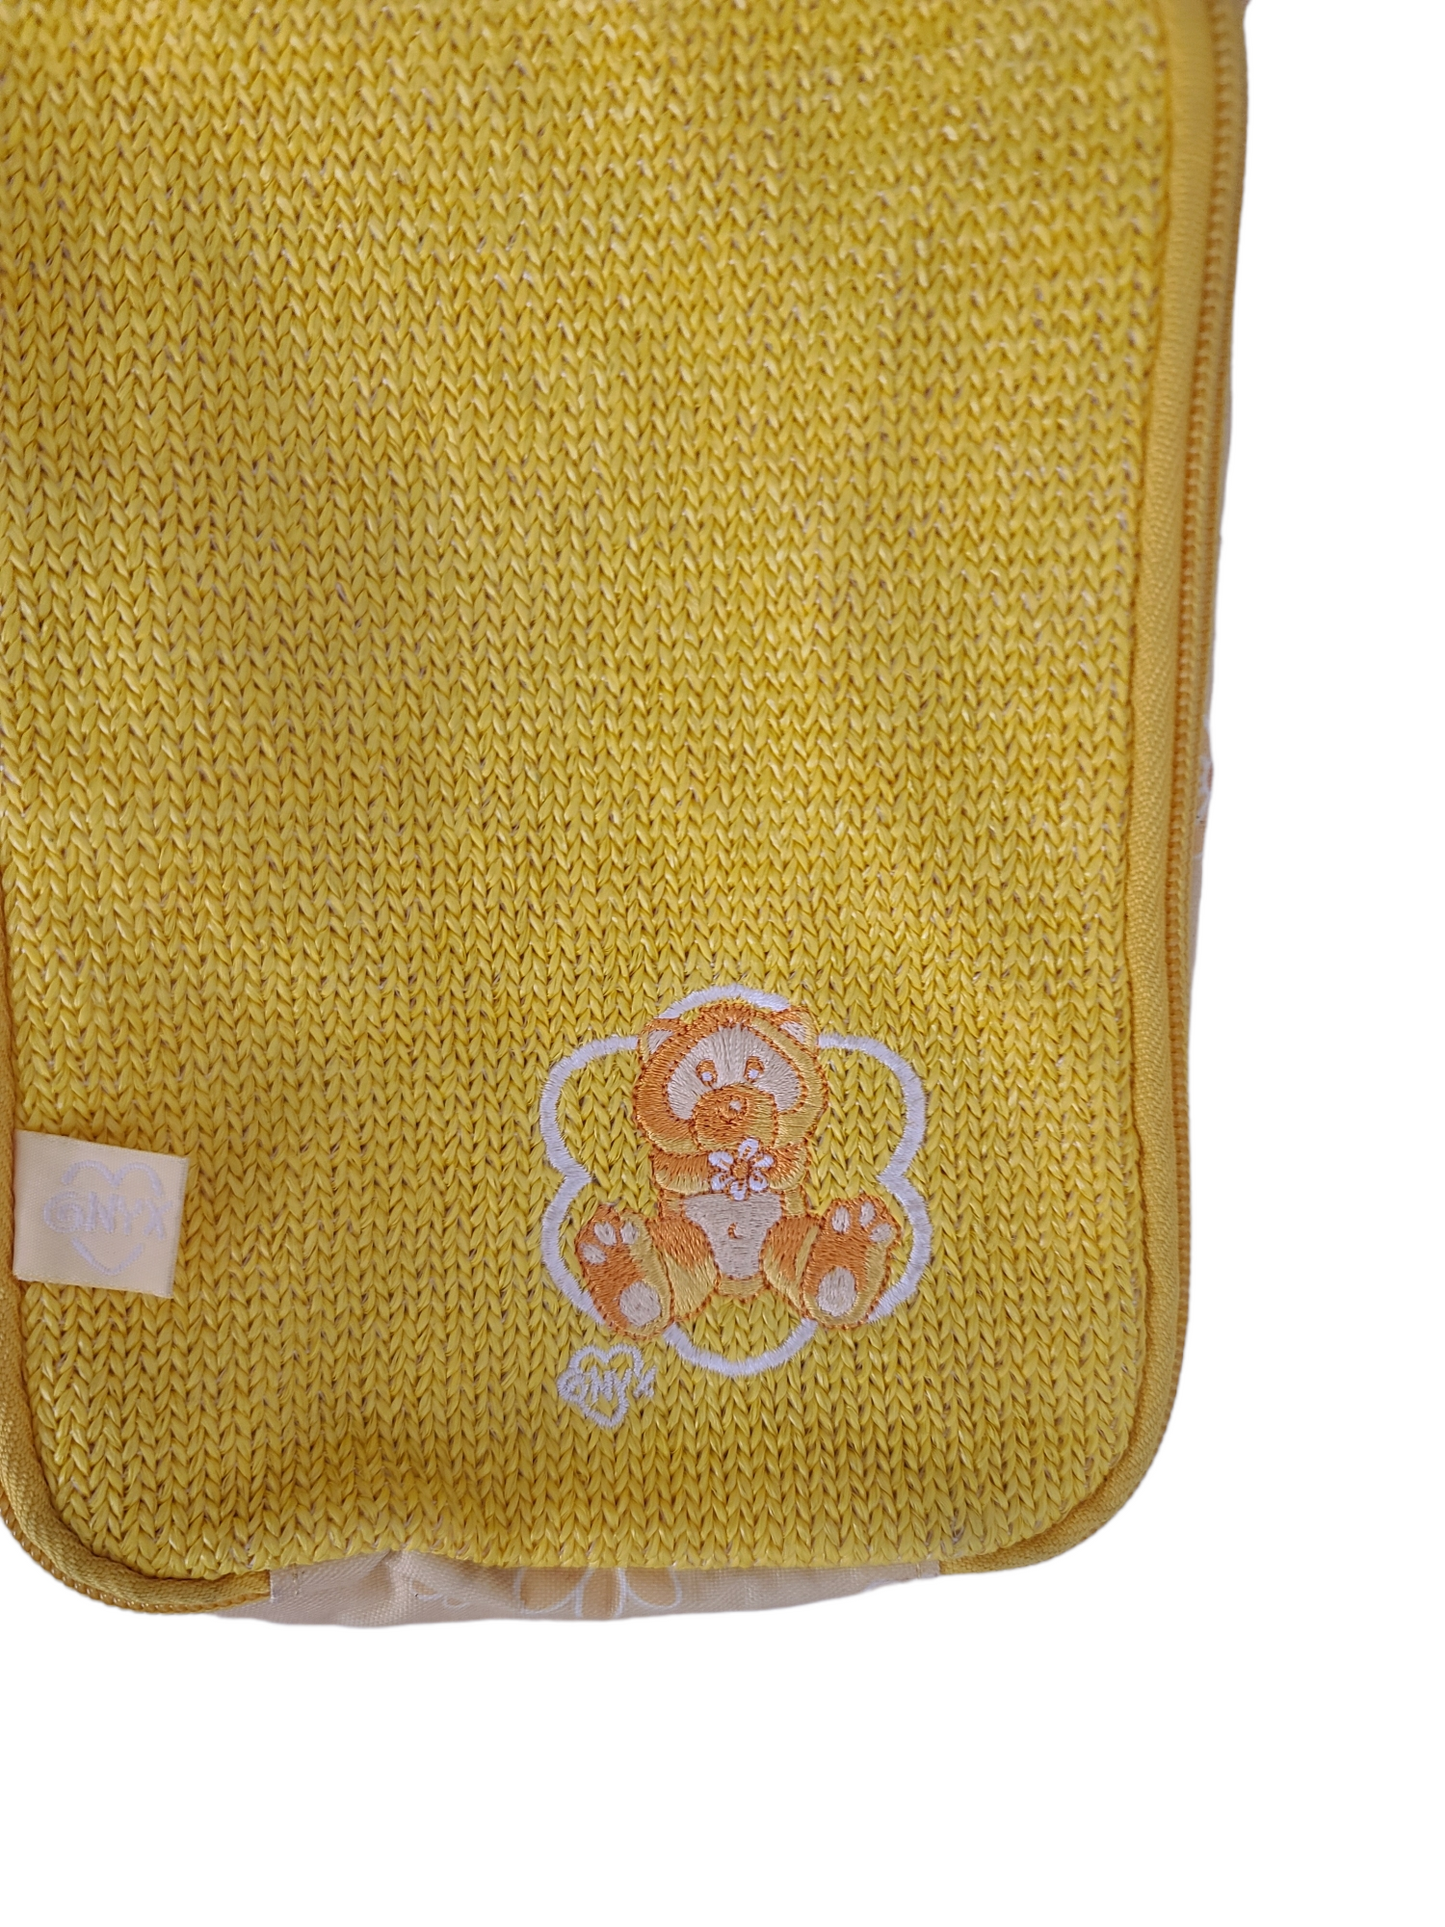 90s yellow kawaii bag